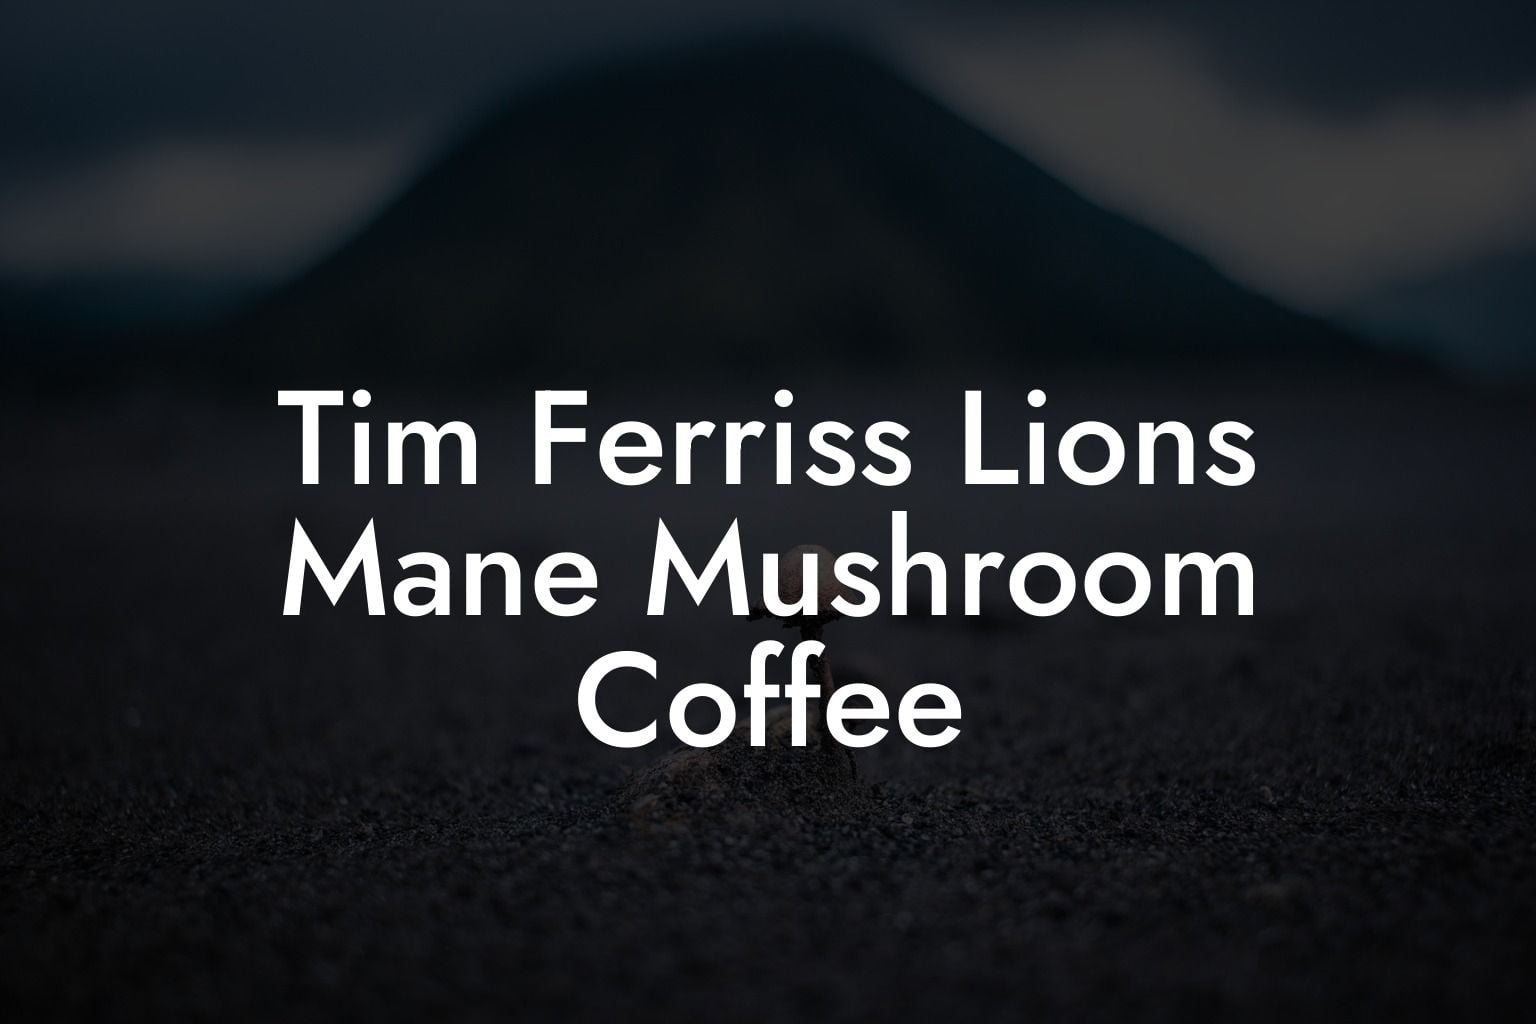 Tim Ferriss Lions Mane Mushroom Coffee